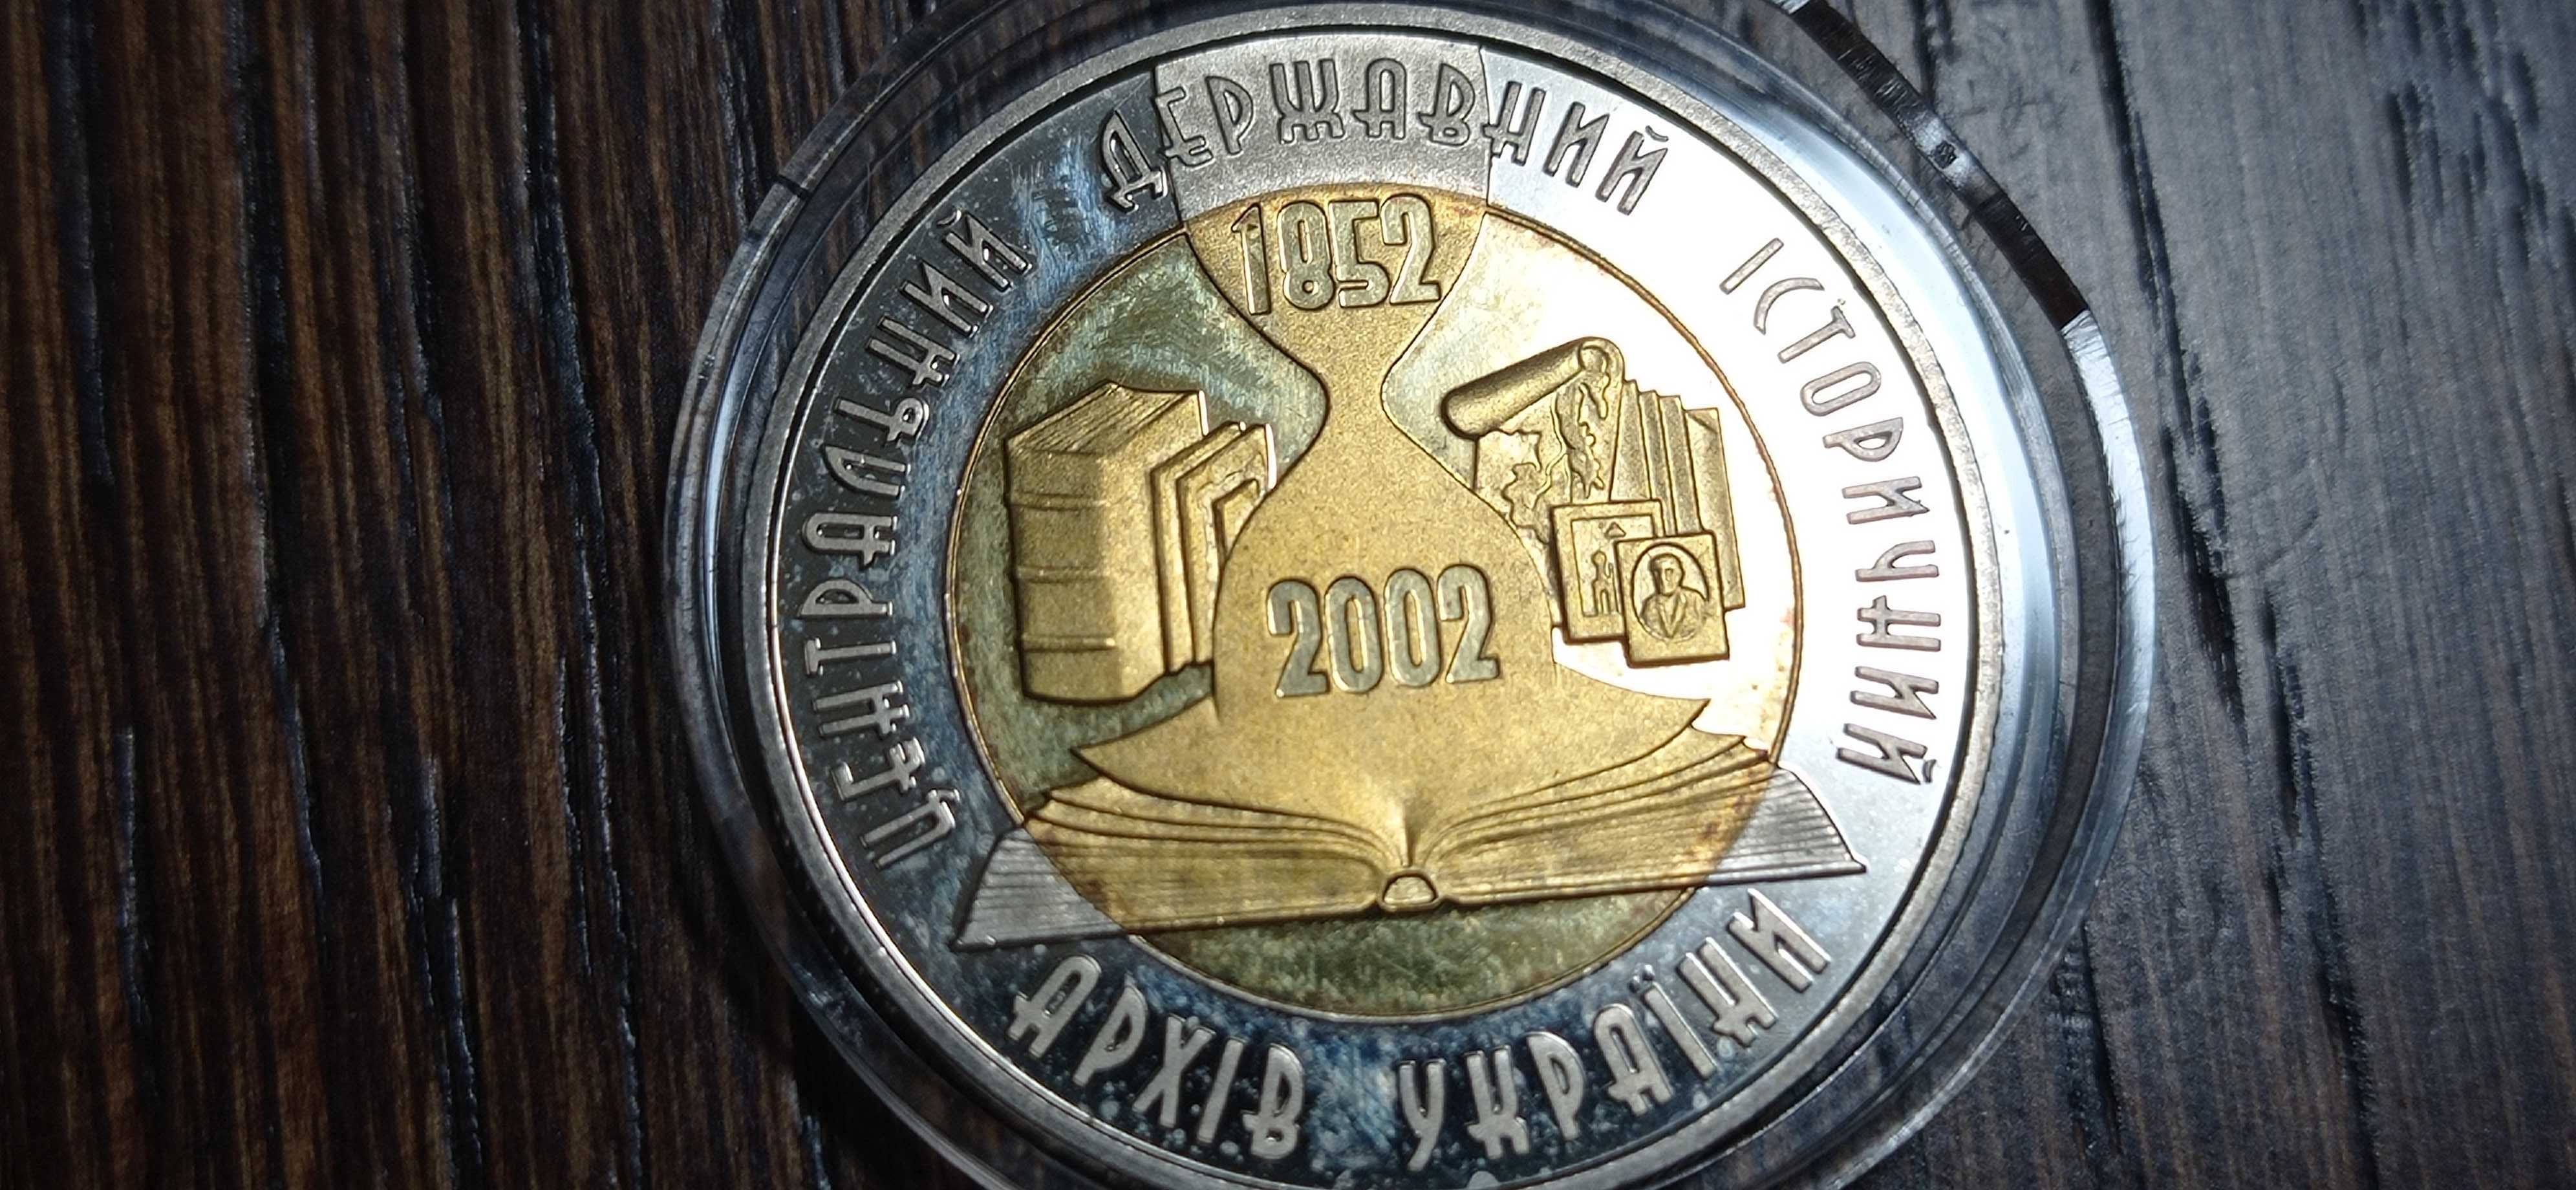 Юбилейная монета пять гривен 2003 г. *Архив Украины-150 лет*